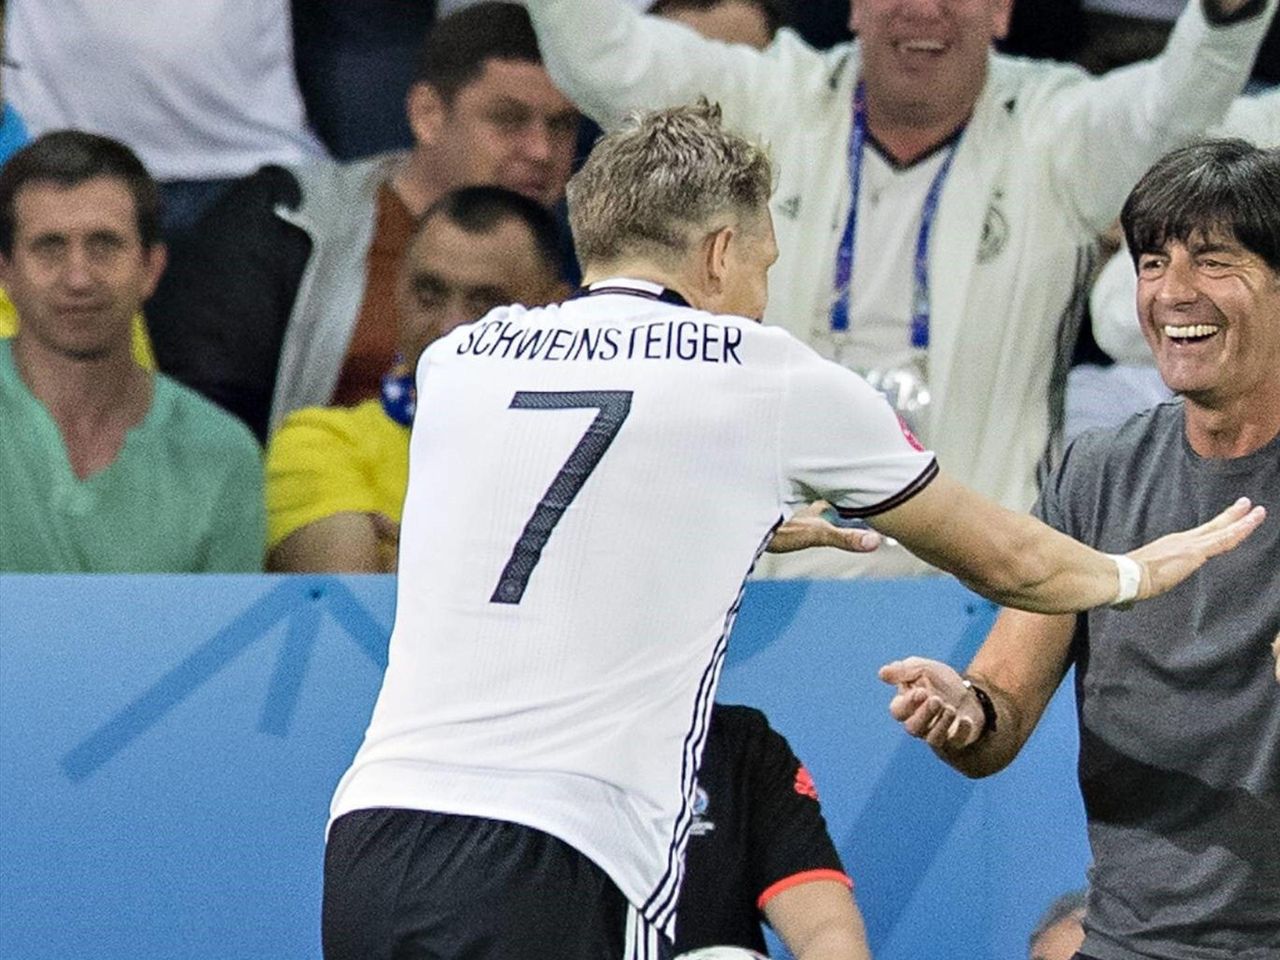 Auswahl Offizielles DFB Sammelglas Fussball EM 2016 Rewe  Bastian Schweinsteiger 